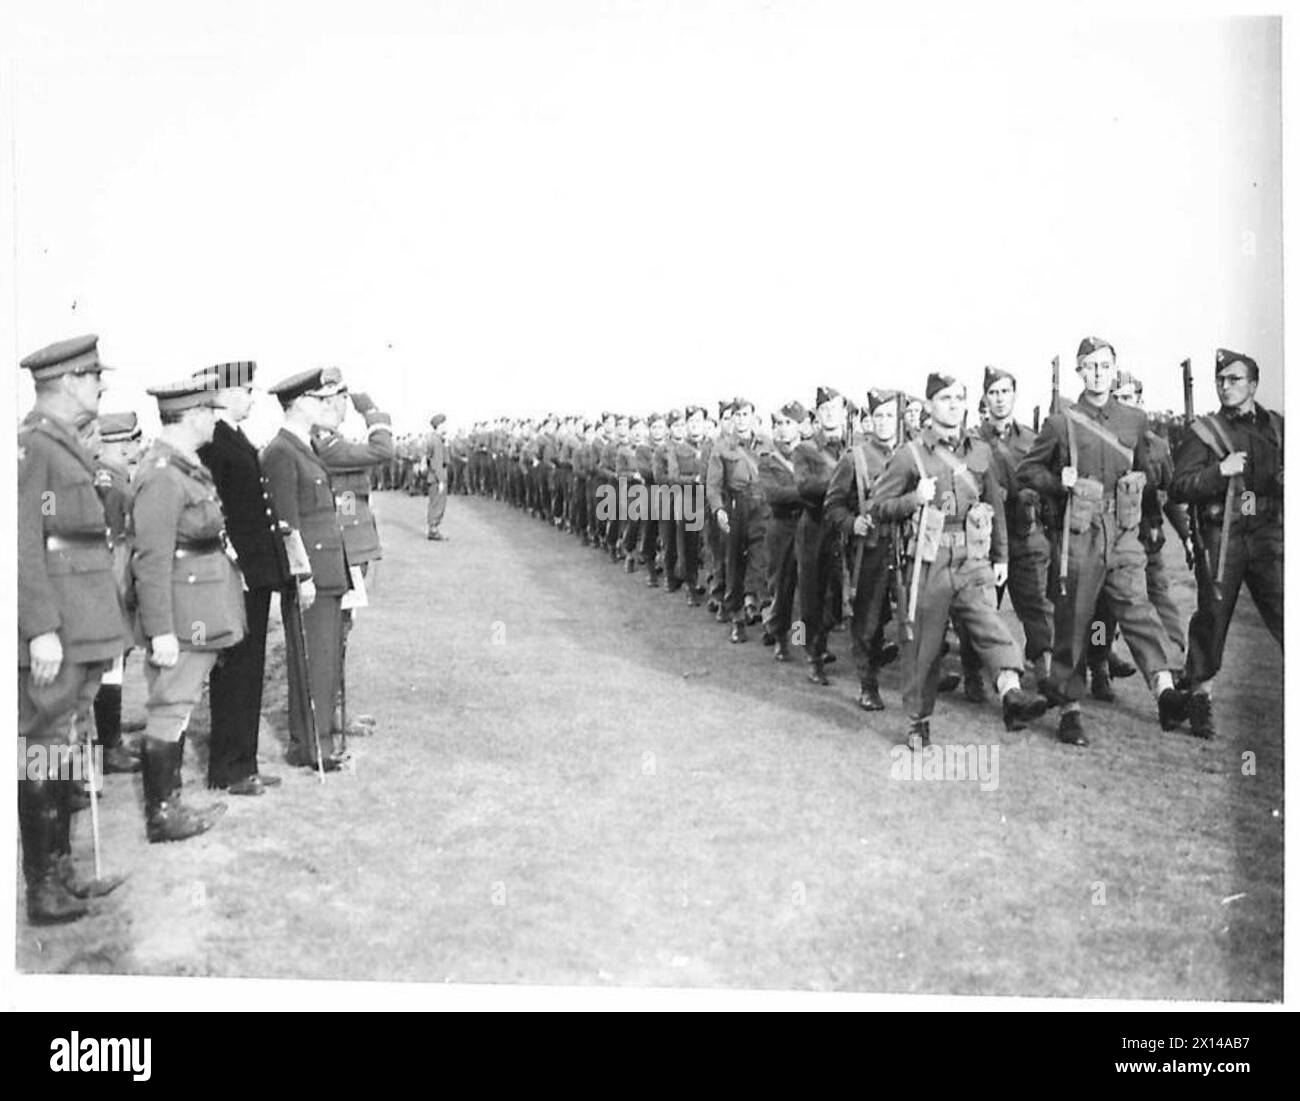 DIE POLNISCHE ARMEE IN GROSSBRITANNIEN, 1940-1947 – General Władysław Sikorski, begleitet von hochrangigen britischen und polnischen Armeeoffizieren, nahm den Gruß bei einem marsch an der Brigade. Foto gemacht in Elie, Fifeshire. Eine Demonstration des Trainings der 4. Cadre Rifle Brigade (zukünftige 1. Polnische unabhängige Fallschirmbrigade), gefolgt von einer Übung, bei der vollständig ausgebildete Fallschirmjäger eingesetzt wurden, wurde von General Władysław Sikorski, dem C-in-C der polnischen Streitkräfte, beobachtet. Der erste Kurs der Schulung ist das Lernen der richtigen Landeweise. Dies wird durch Fallschirmjäger vermittelt, die von einem springen Stockfoto